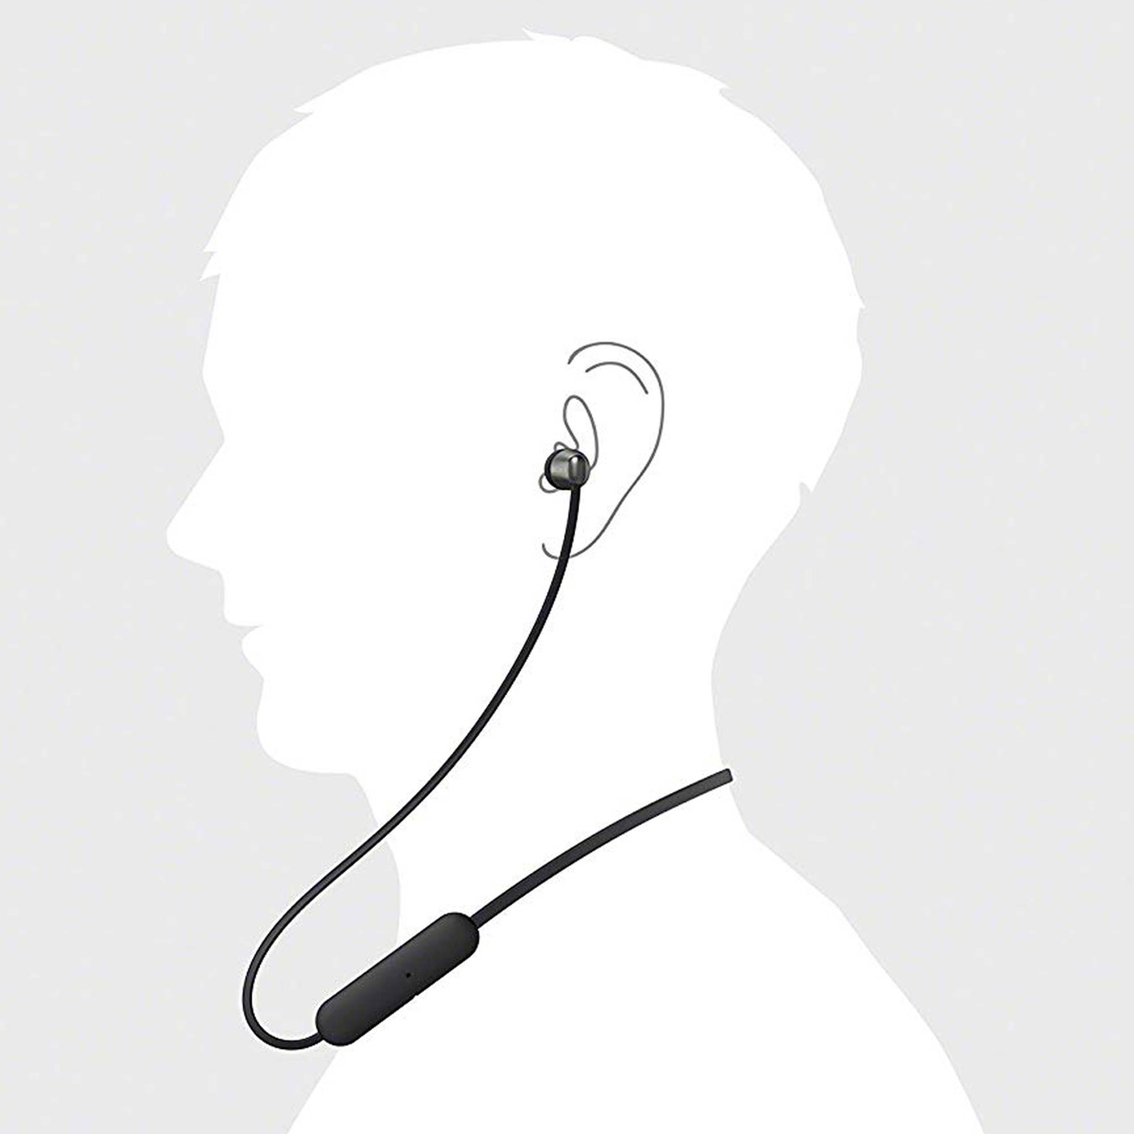 Sony WI-C310 Wireless In Ear Headphones - Image 6 of 6